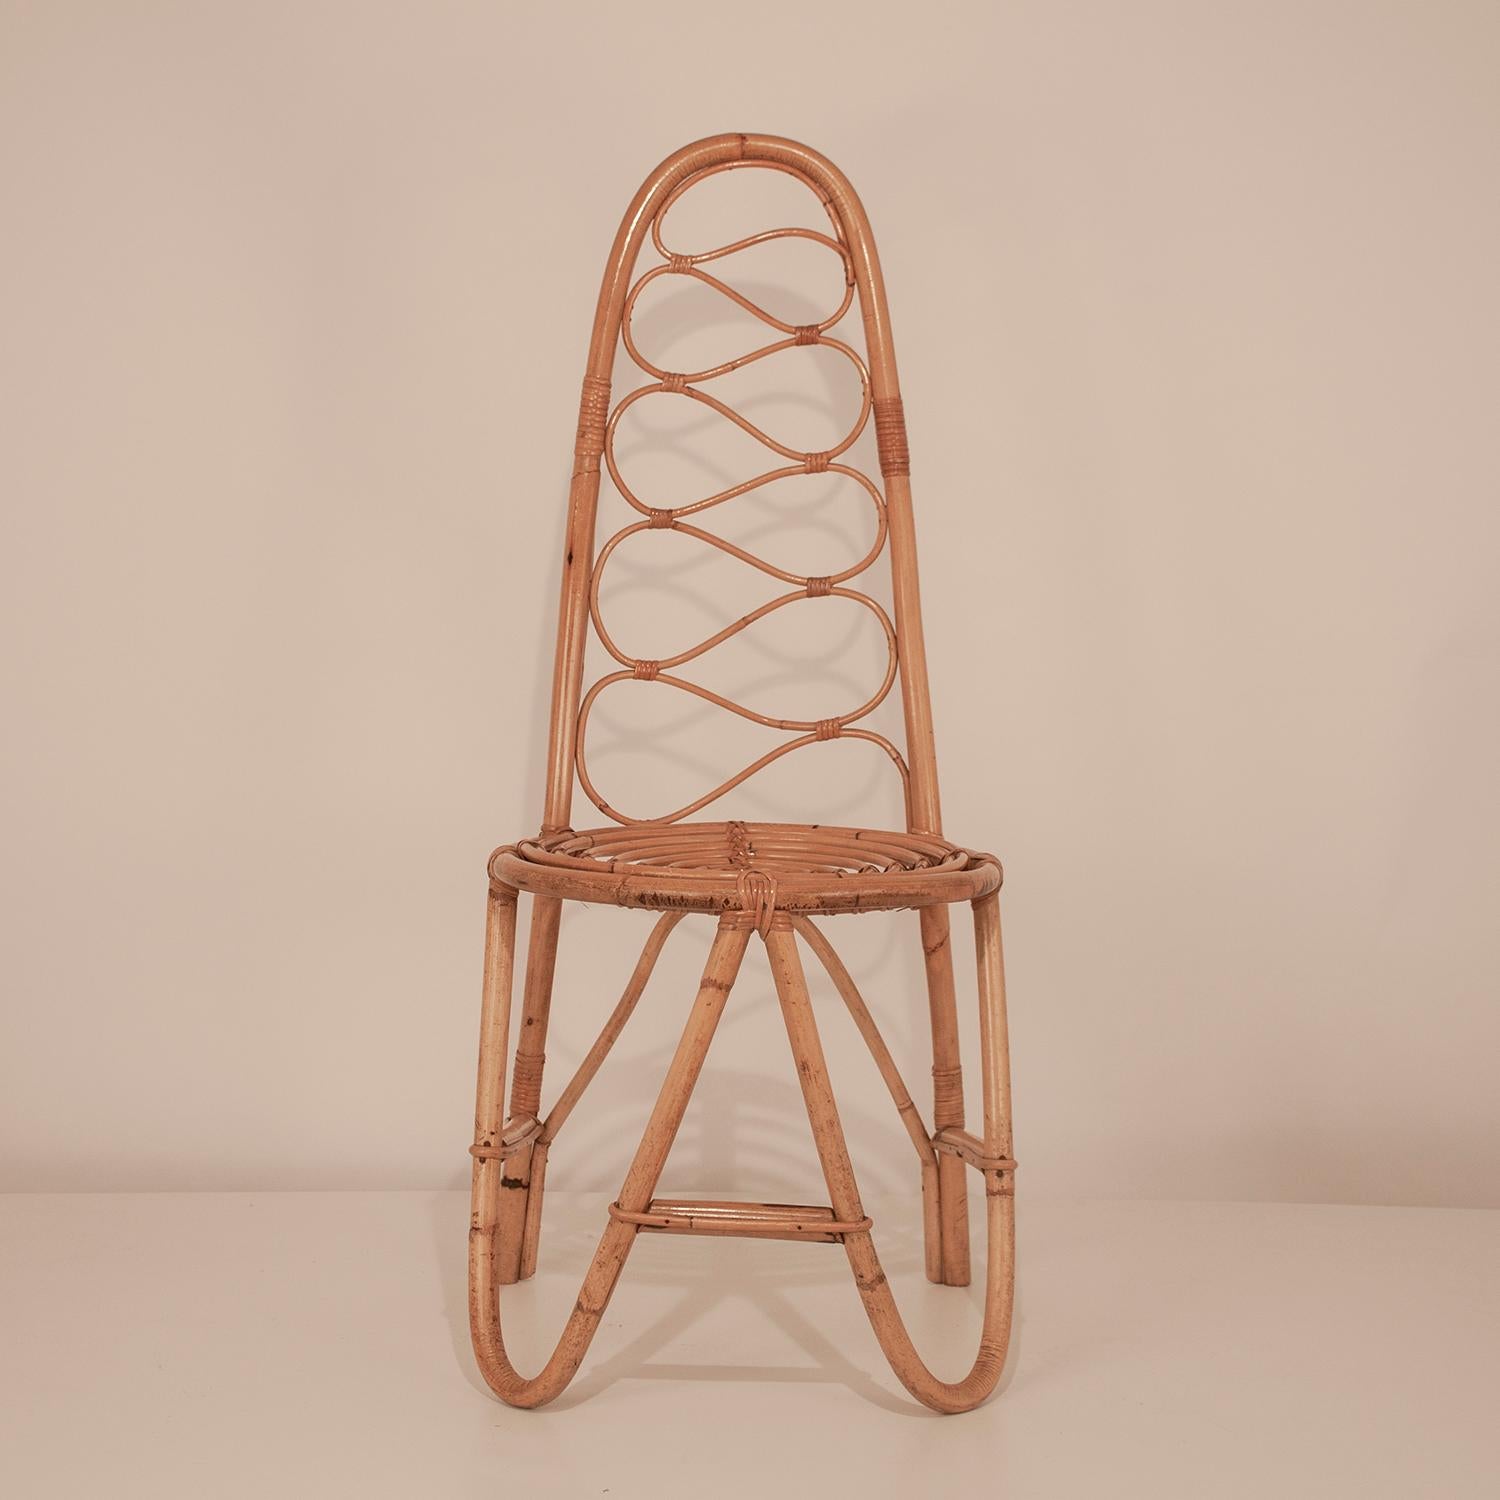 Rattan chair, Spain, 1960s.